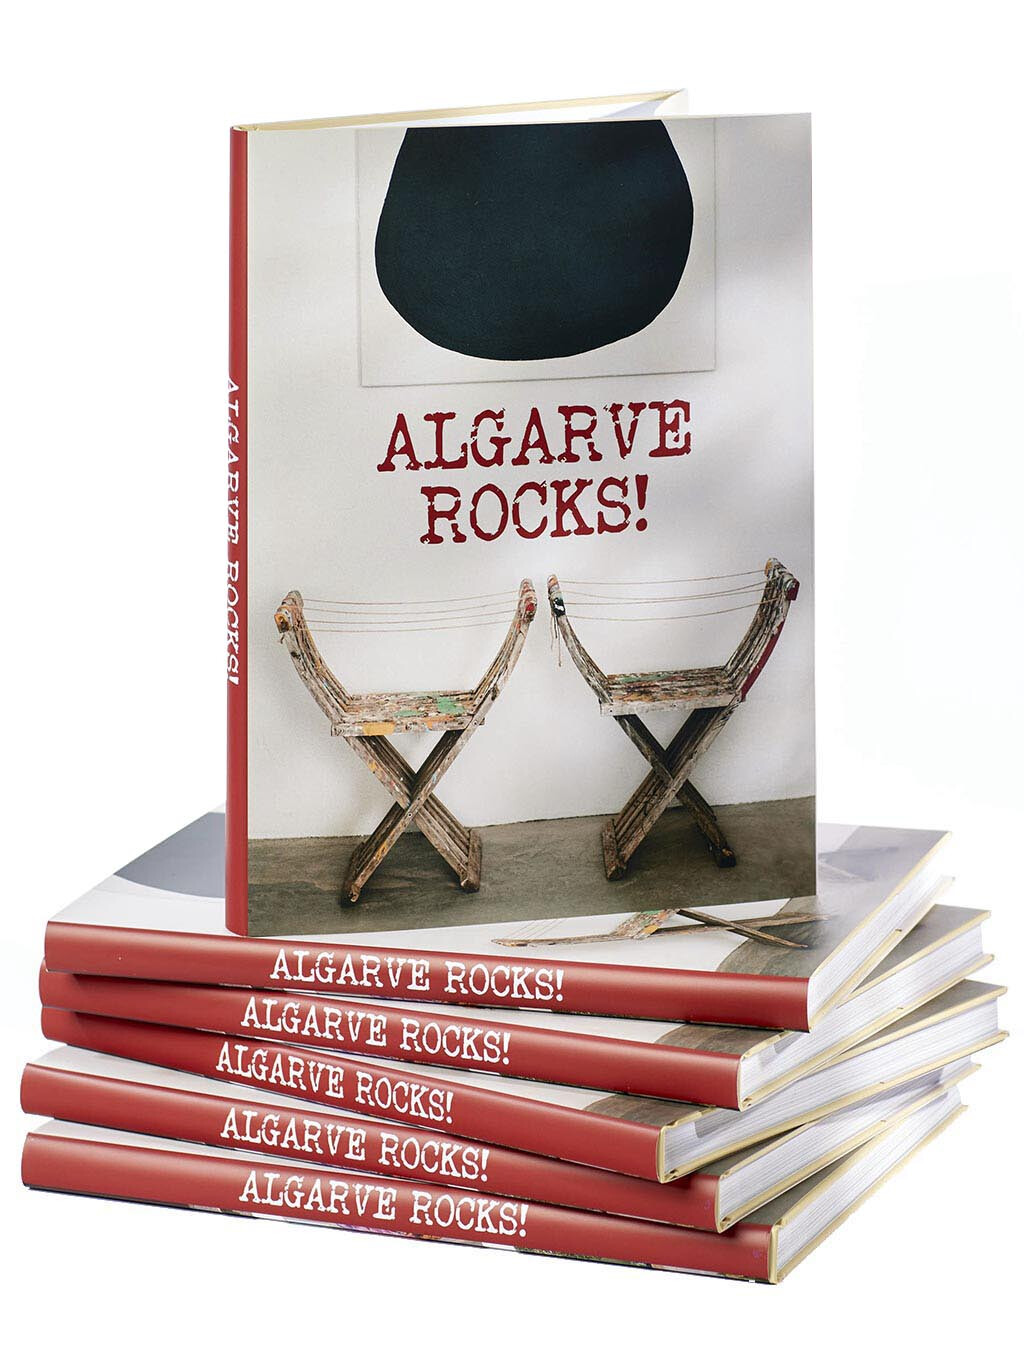 ALGARVE ROCKS!